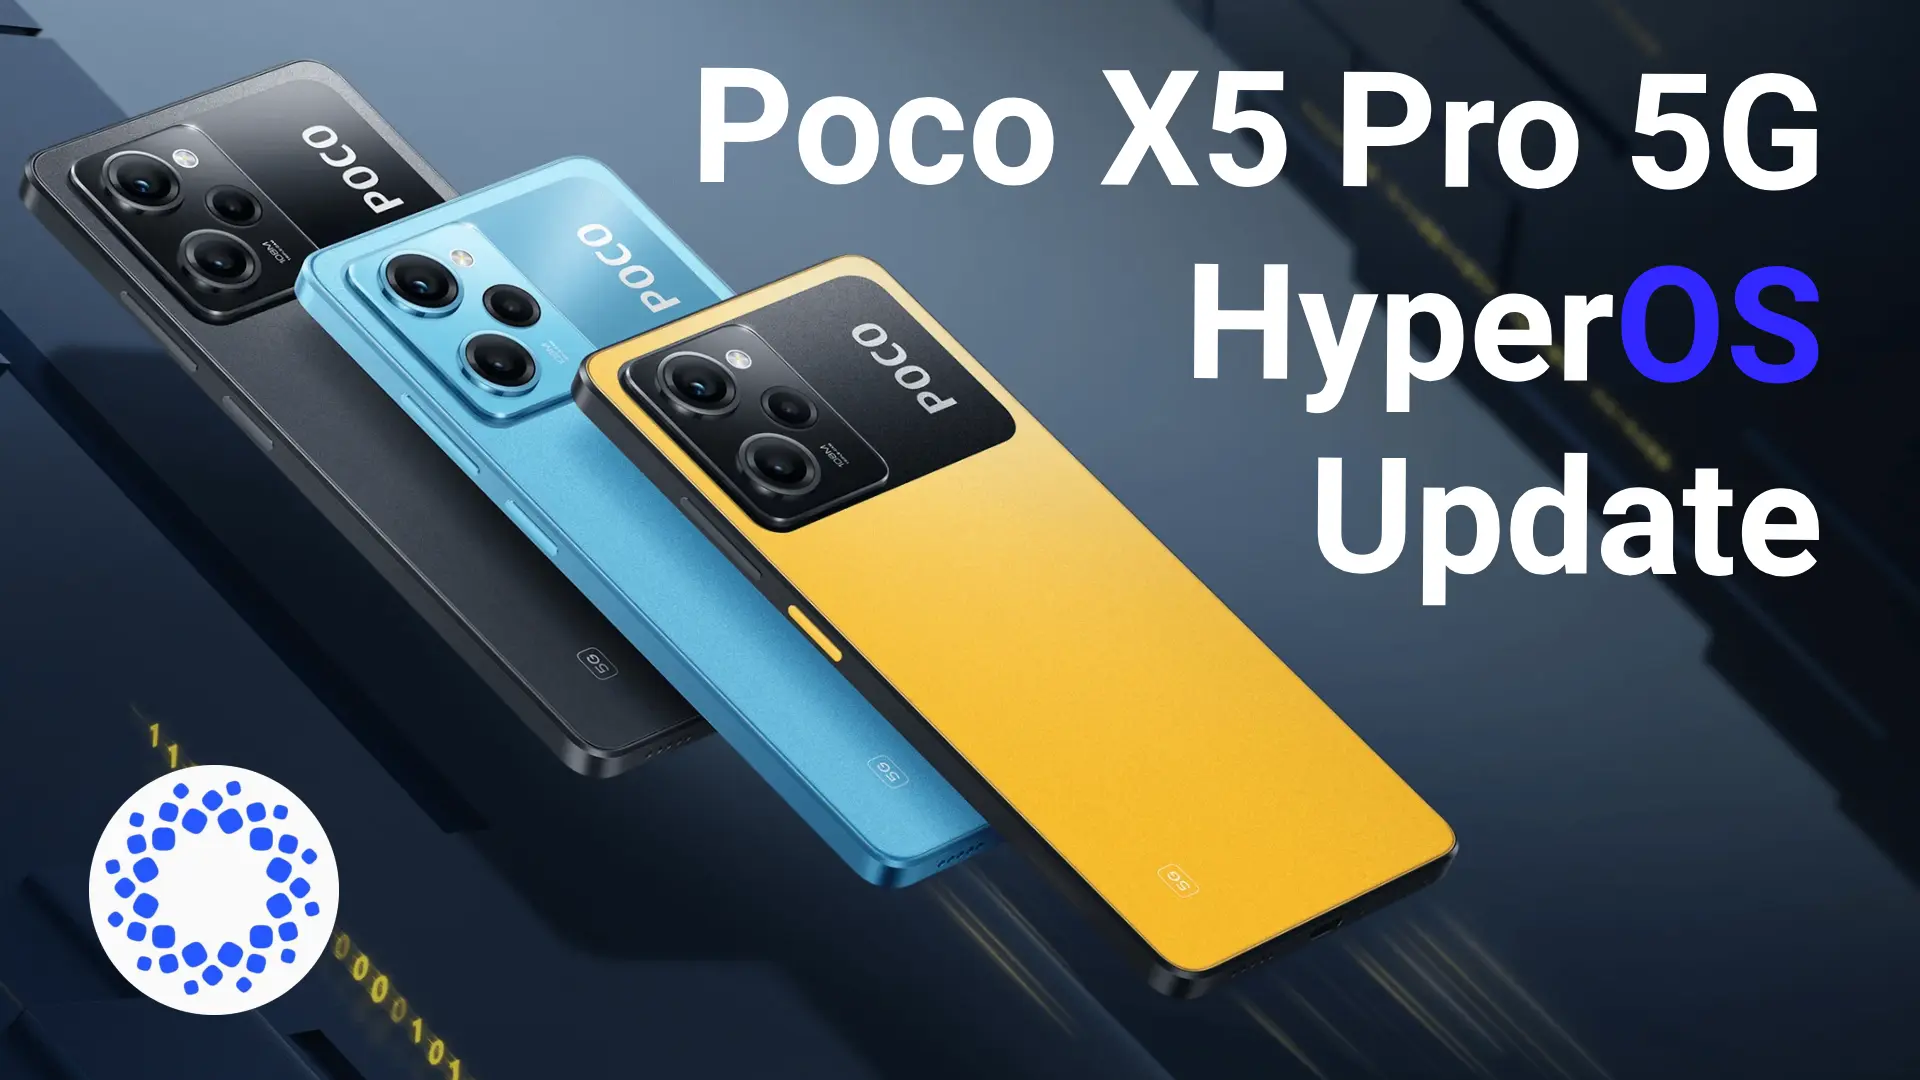 Poco X5 Pro 5G HyperOS Update